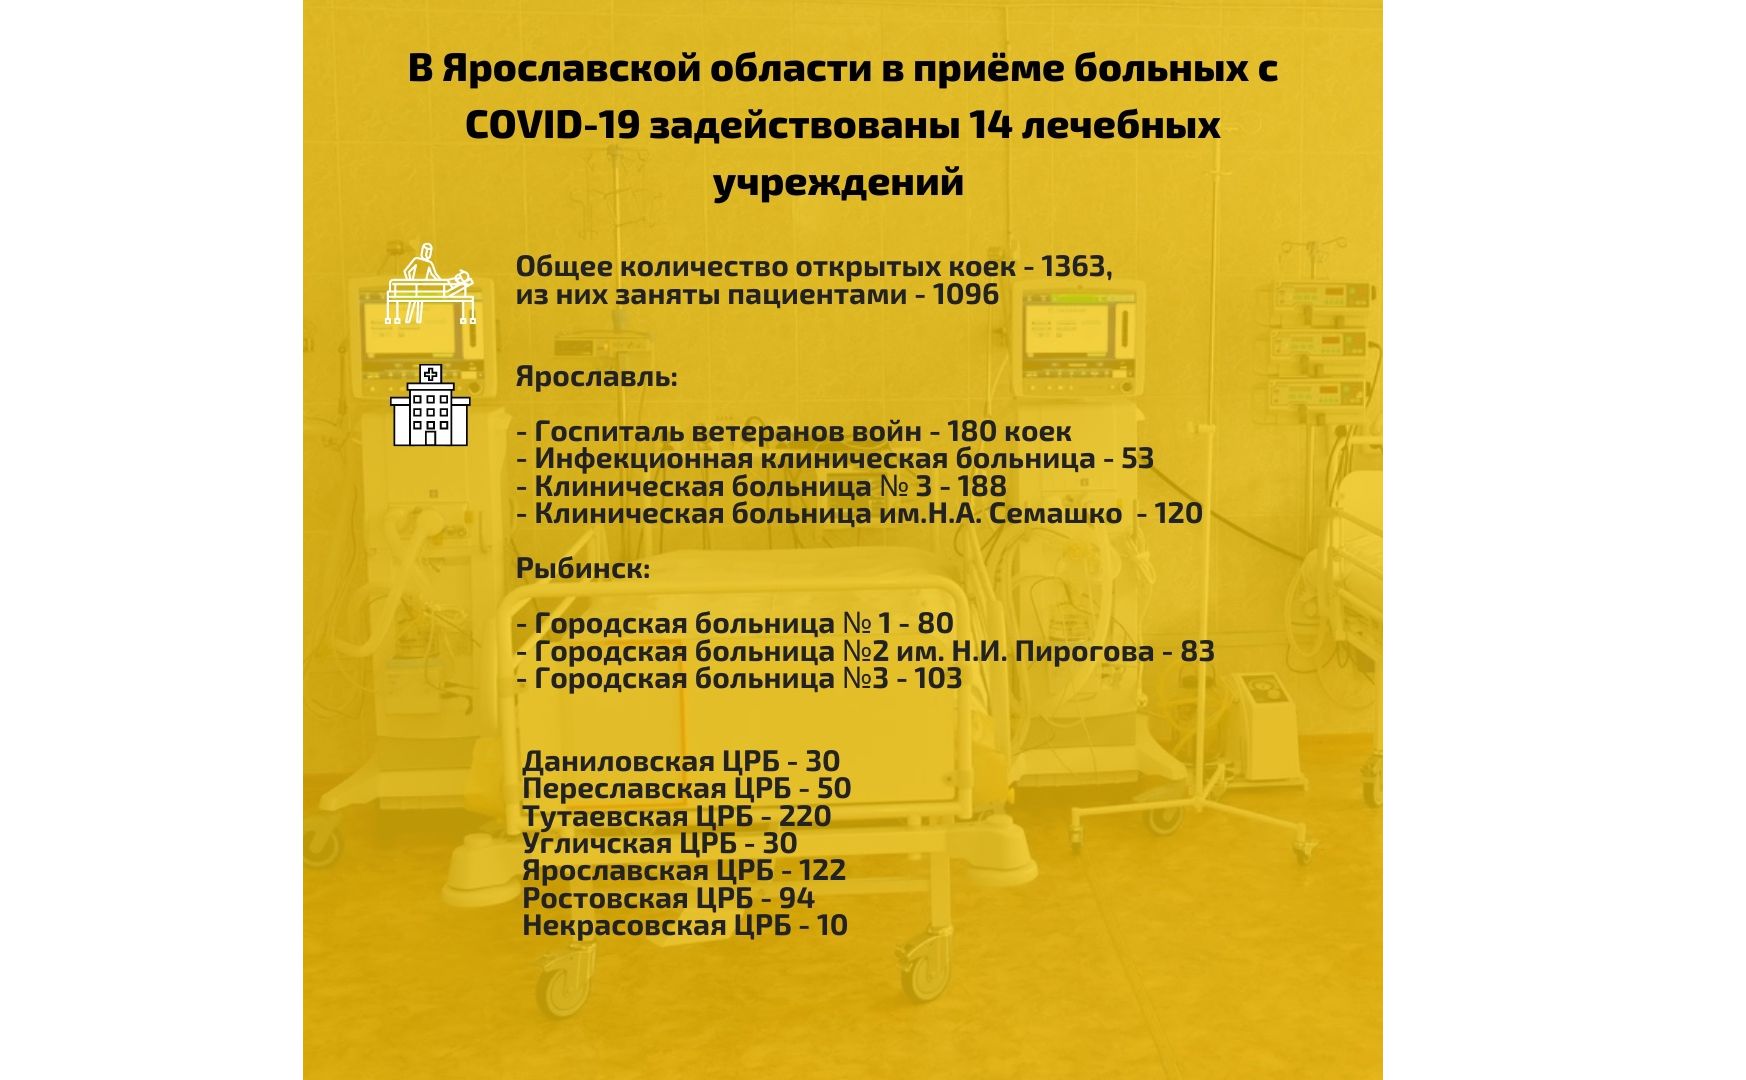 В Ярославской области снижается количество госпитализированных пациентов с коронавирусом